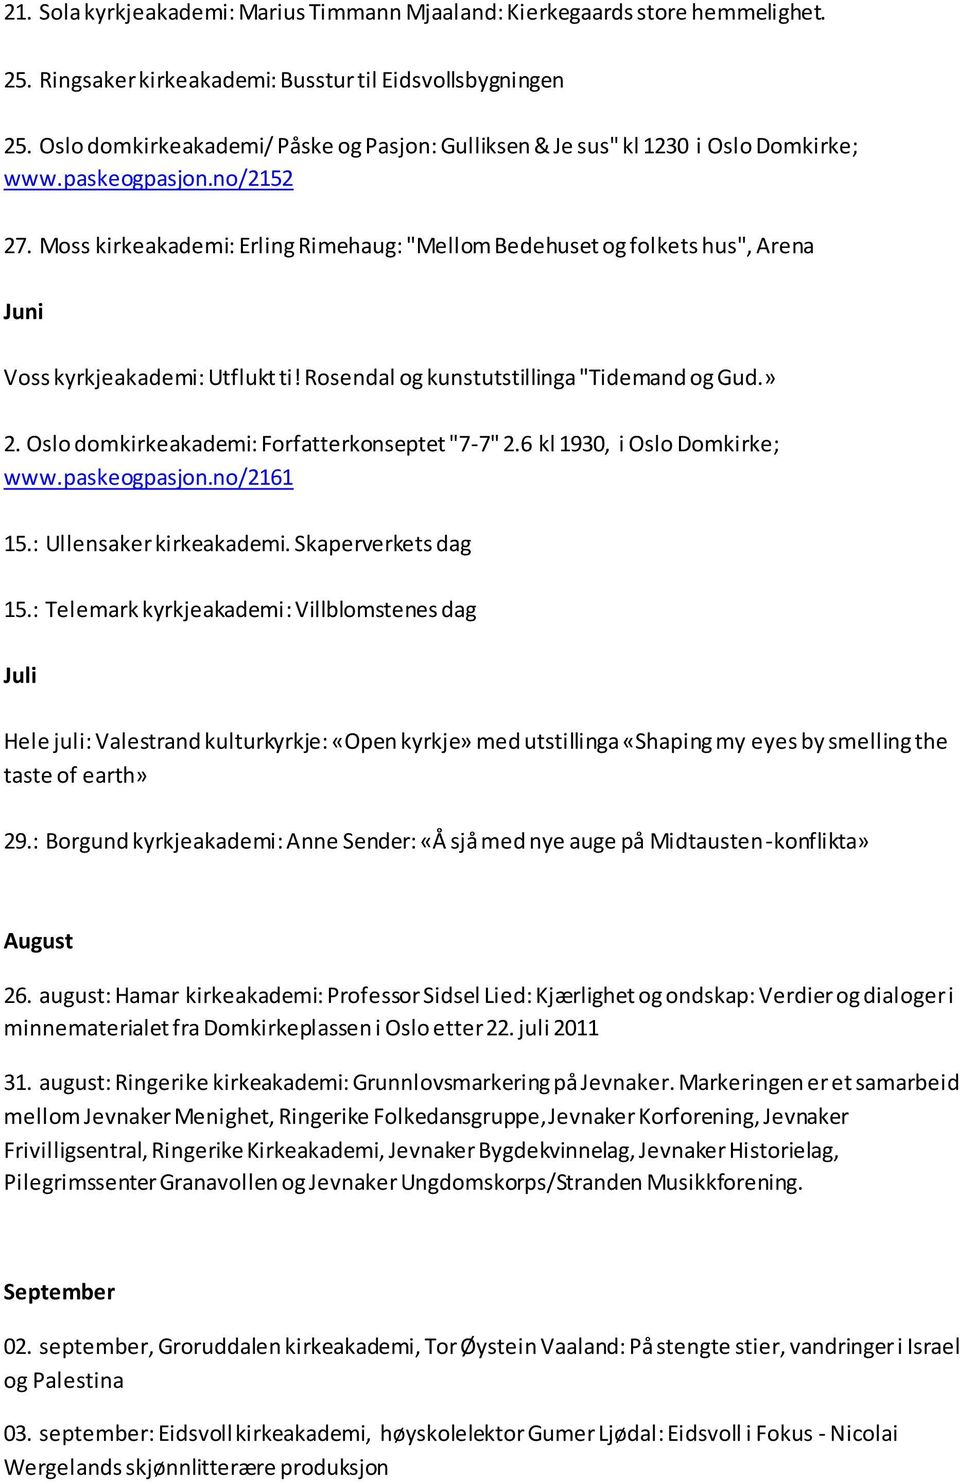 Moss kirkeakademi: Erling Rimehaug: "Mellom Bedehuset og folkets hus", Arena Juni Voss kyrkjeakademi: Utflukt ti! Rosendal og kunstutstillinga "Tidemand og Gud.» 2.